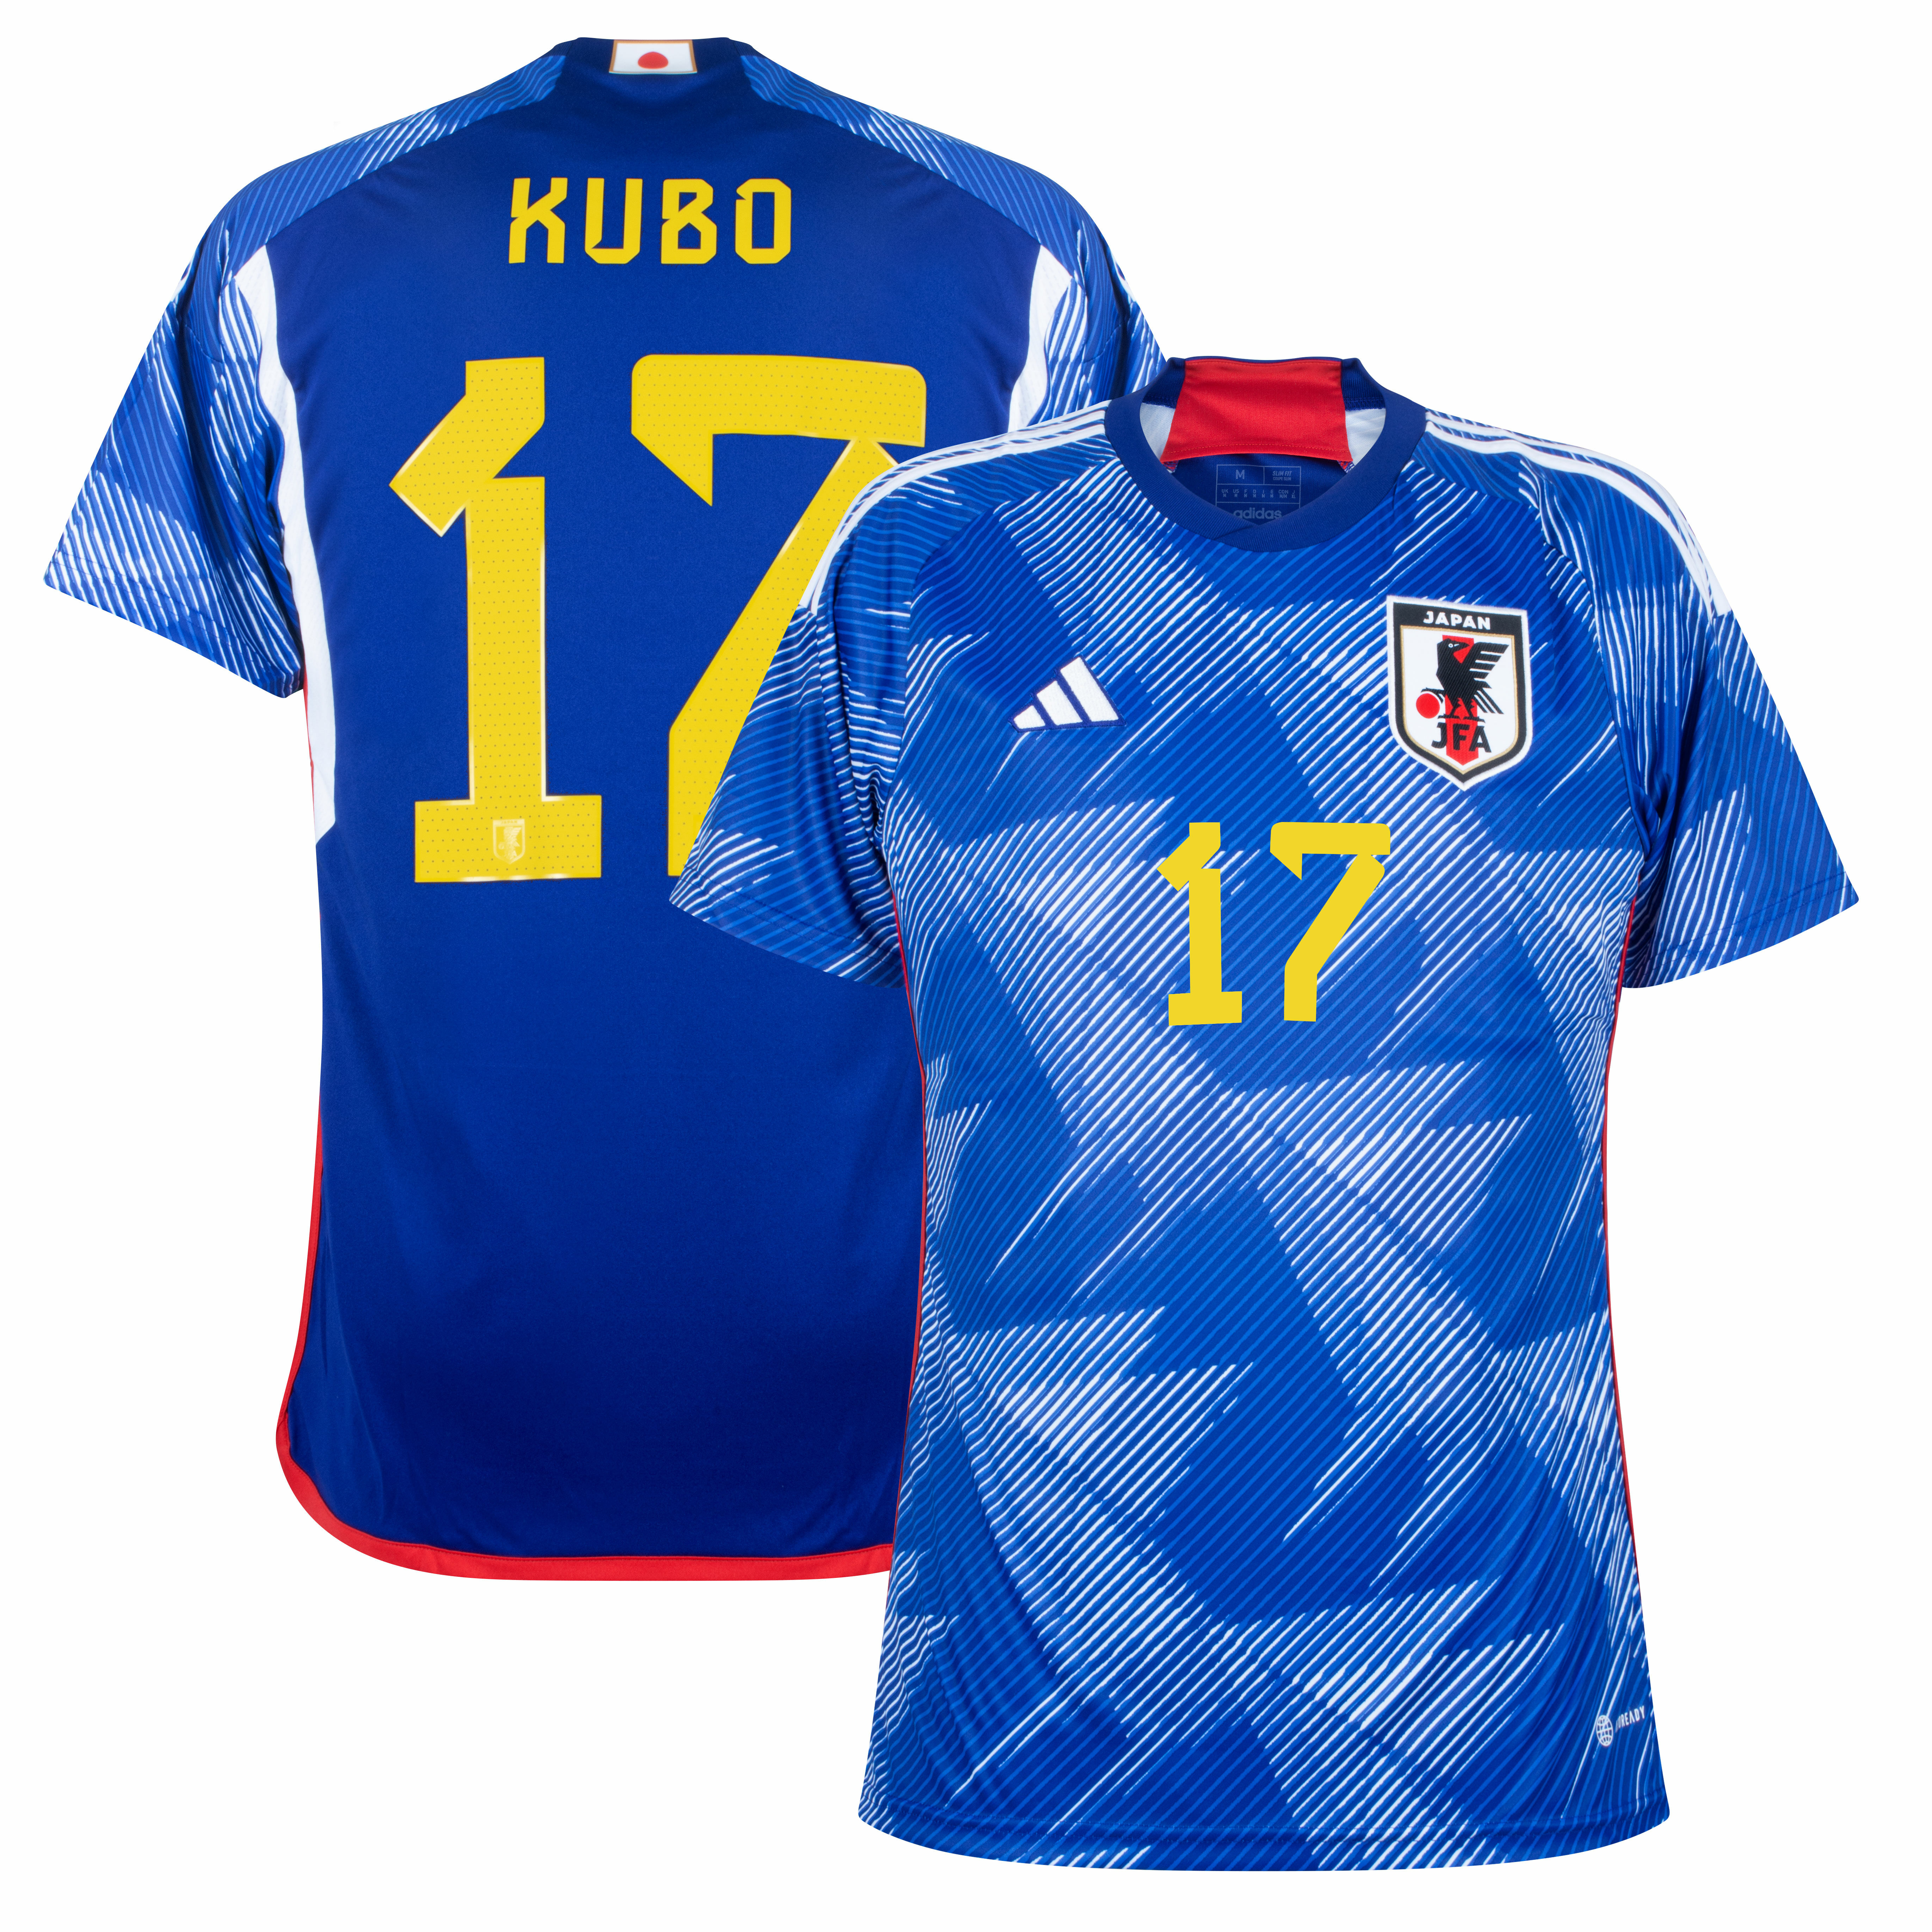 Japonsko - Dres fotbalový - číslo 17, oficiální potisk, domácí, sezóna 2022/23, modrý, Júja Kubo